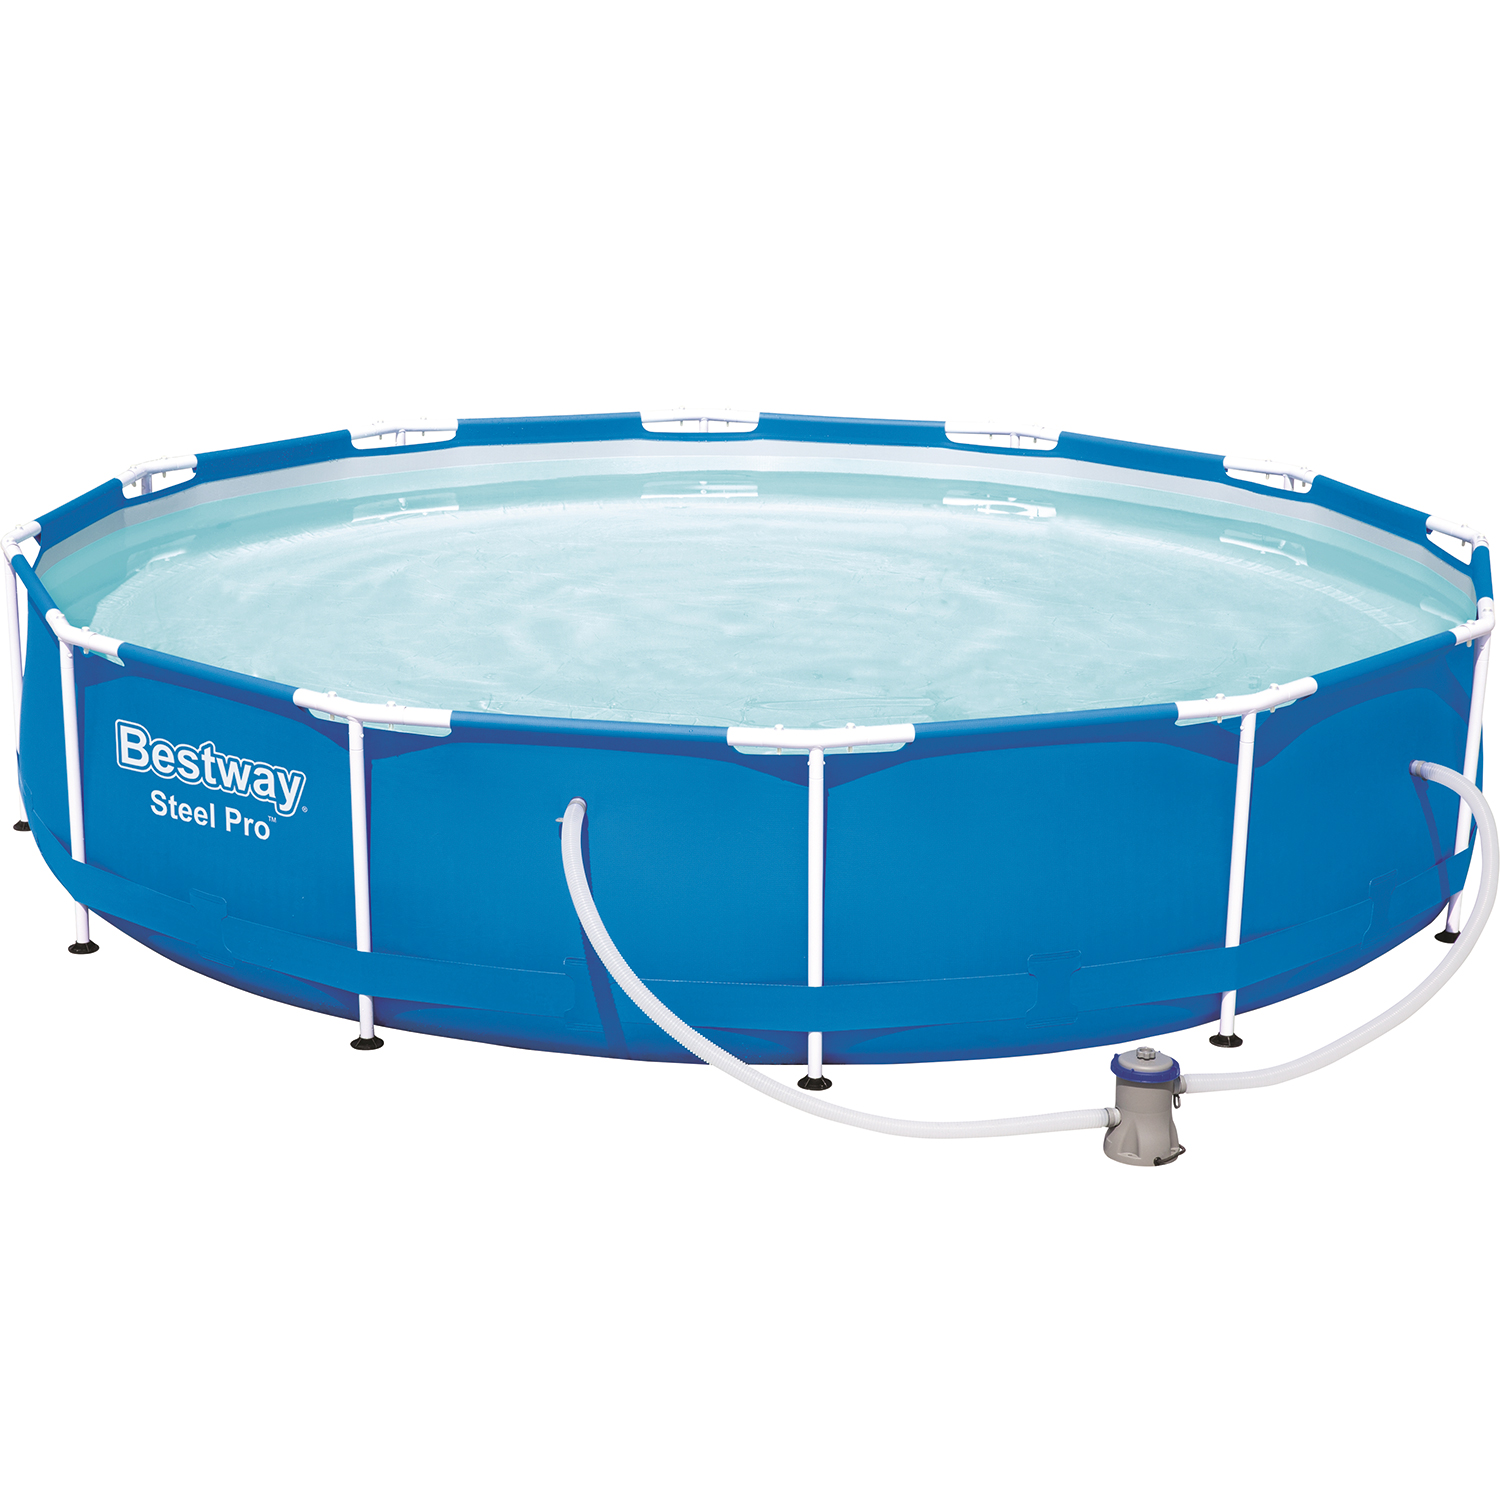 Bestway Steel Pro pool + filter pump 366 x 76 cm